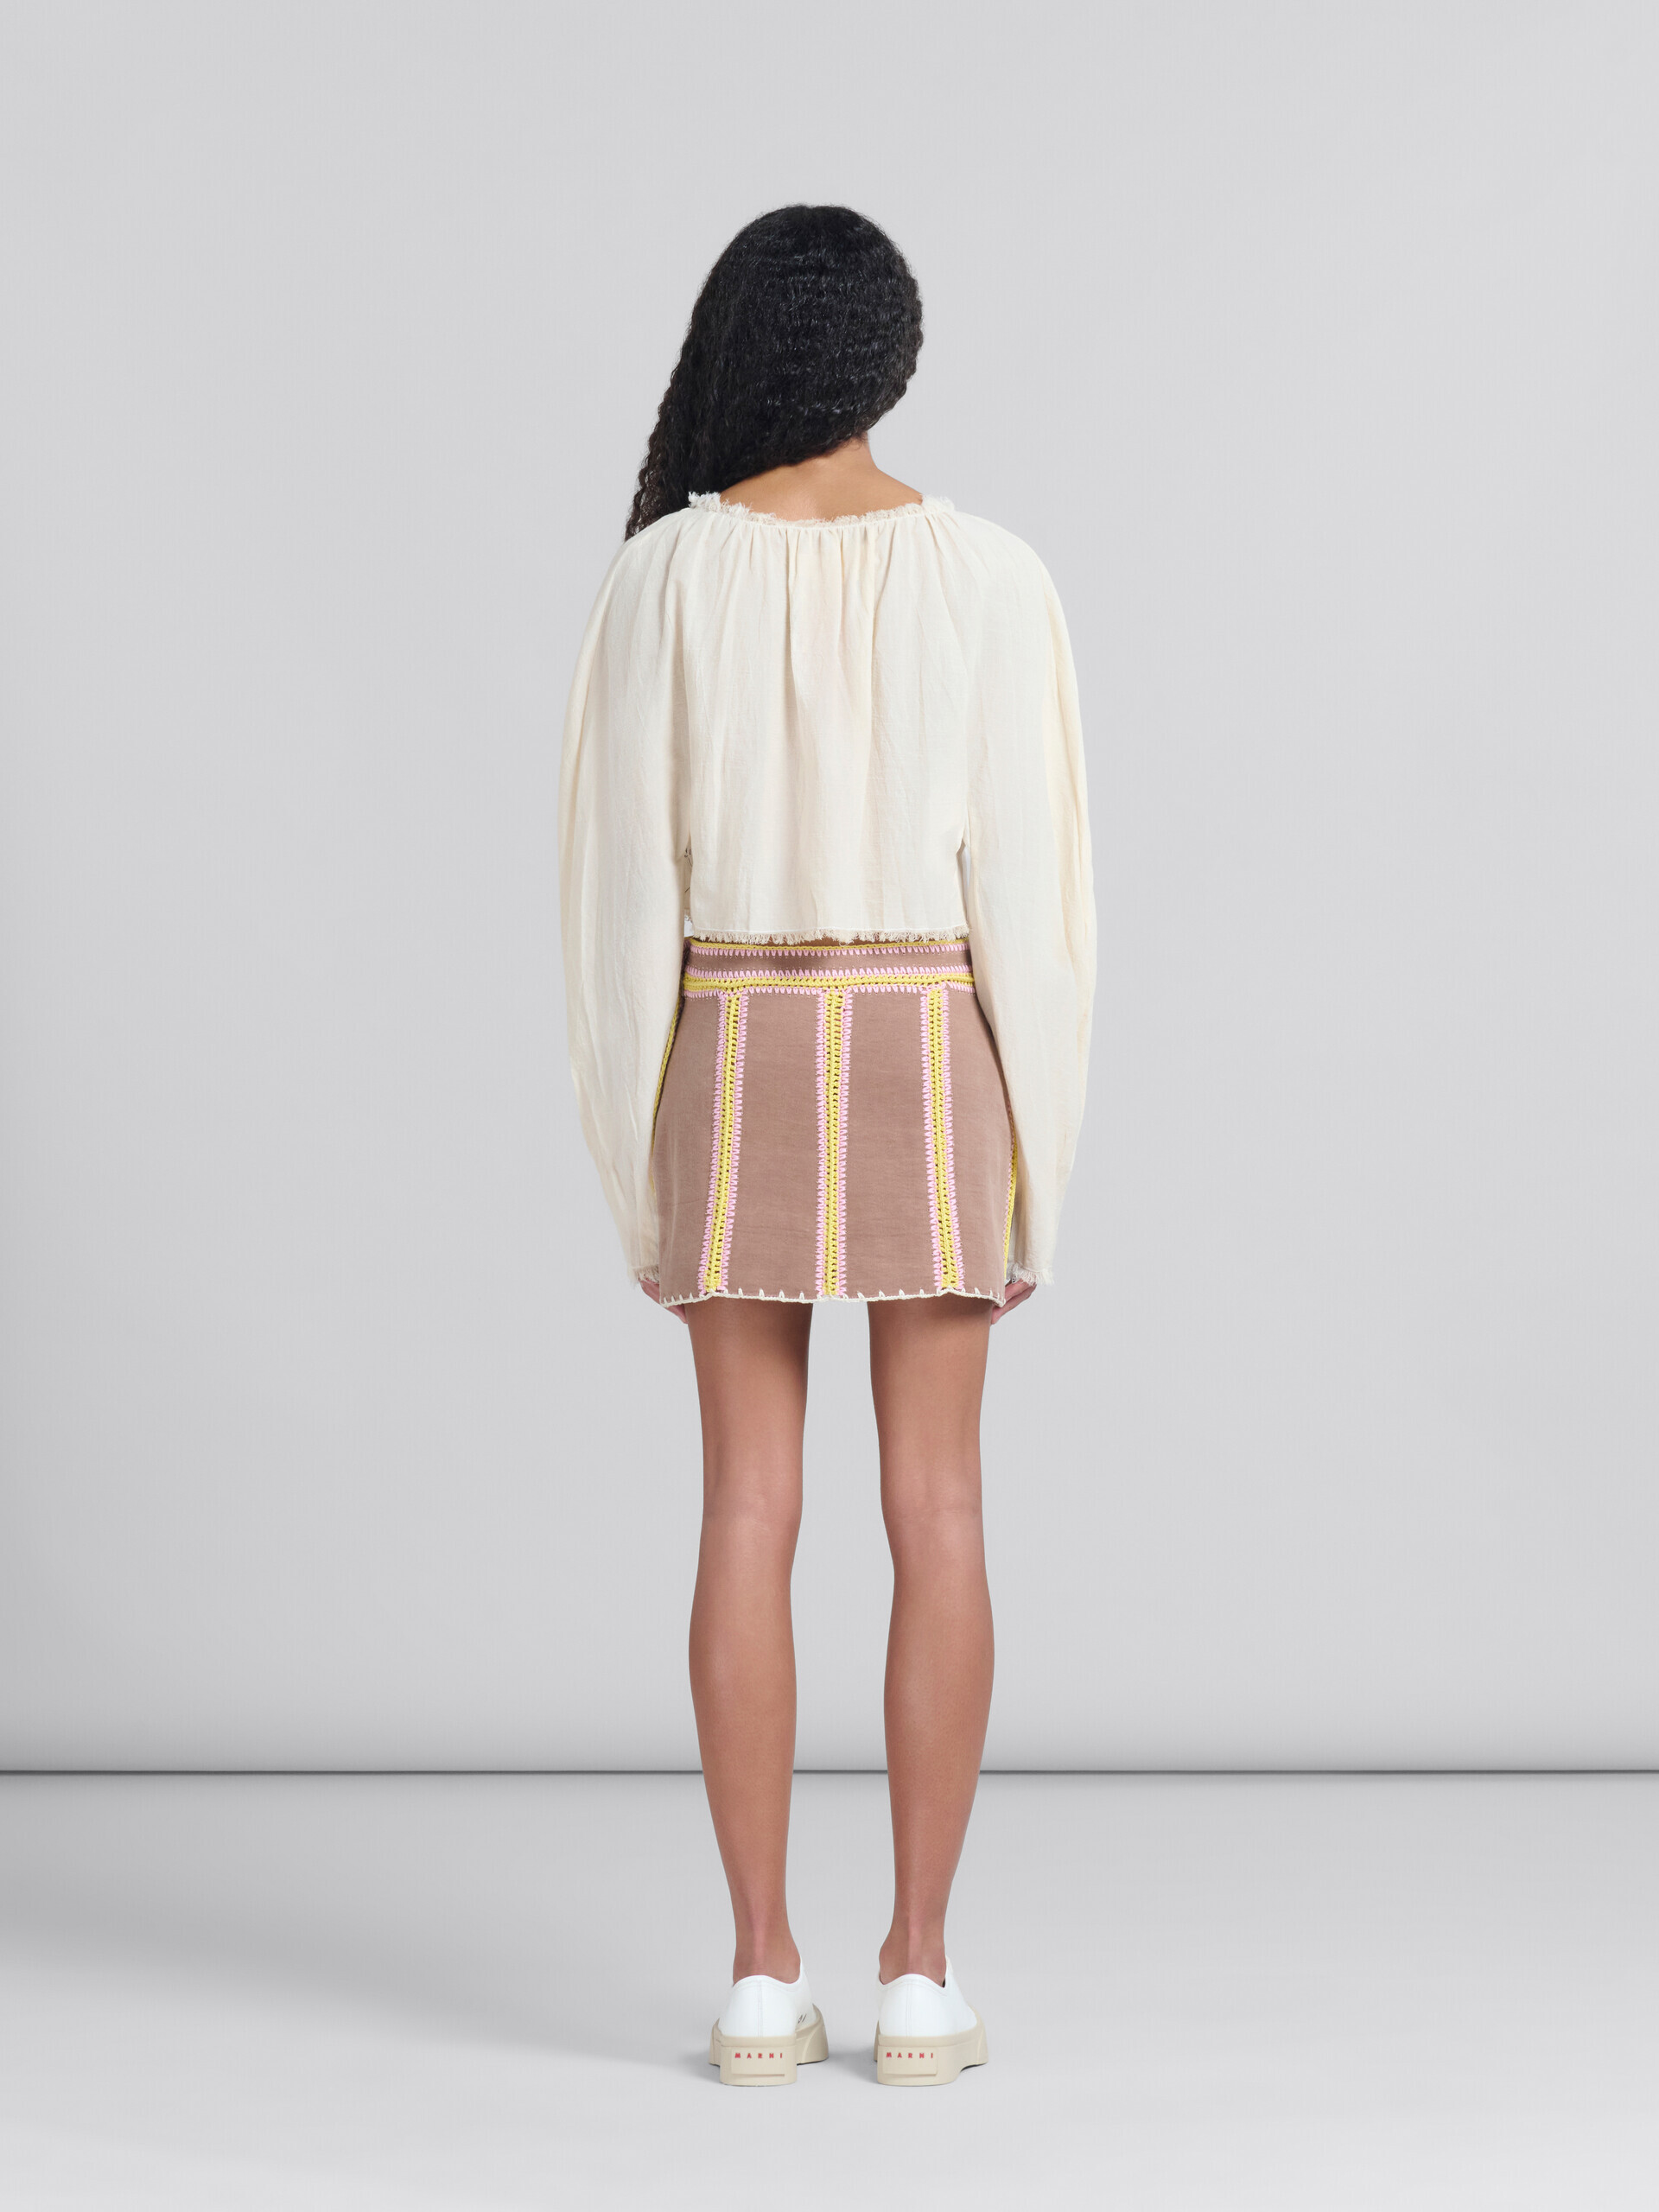 Minifalda de tejido vaquero orgánico marrón con detalles de ganchillo - Faldas - Image 3